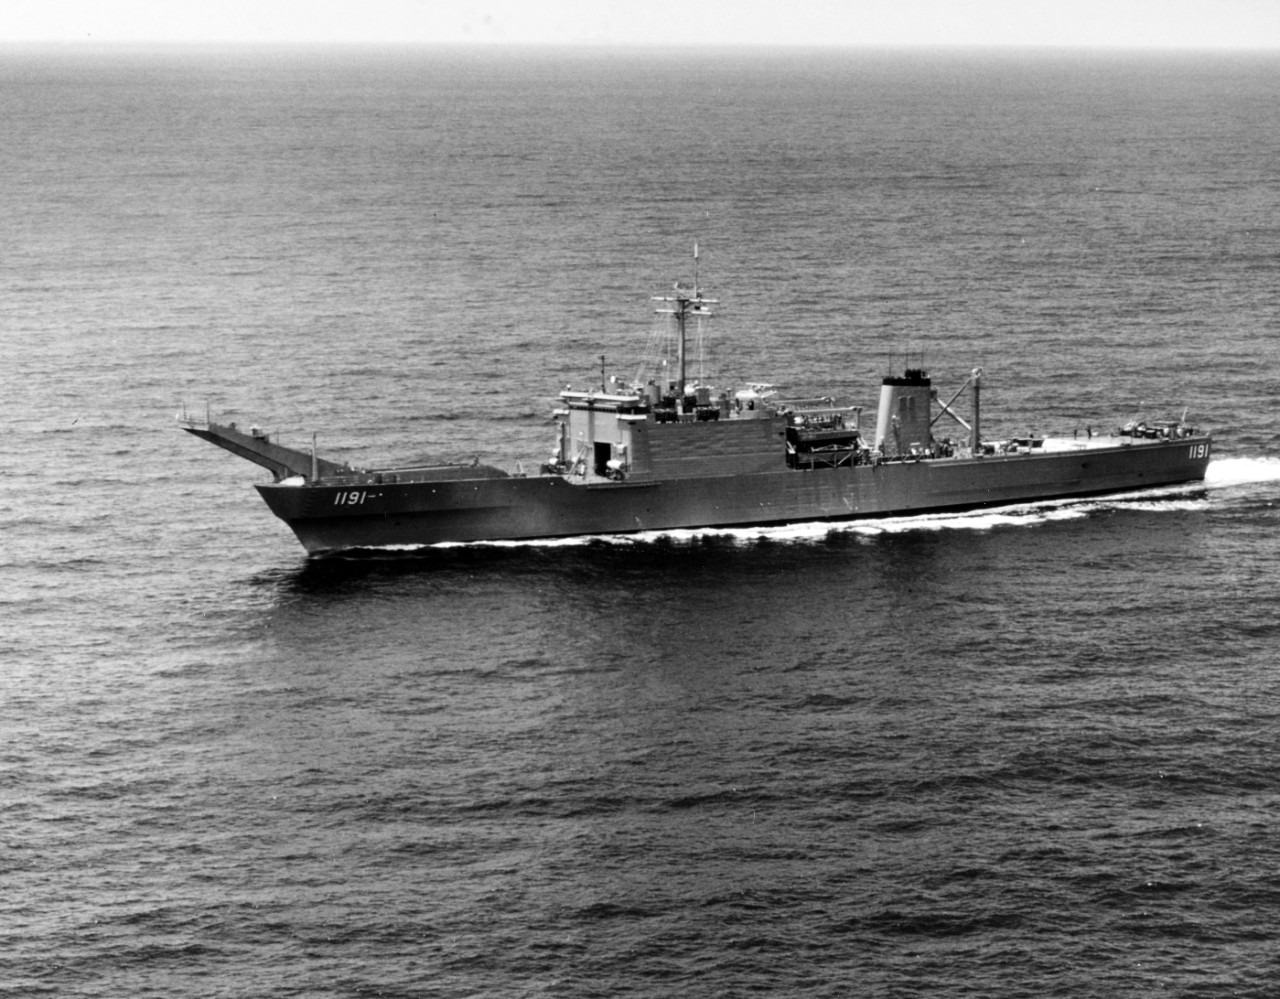 USS RACINE (LST-1191)